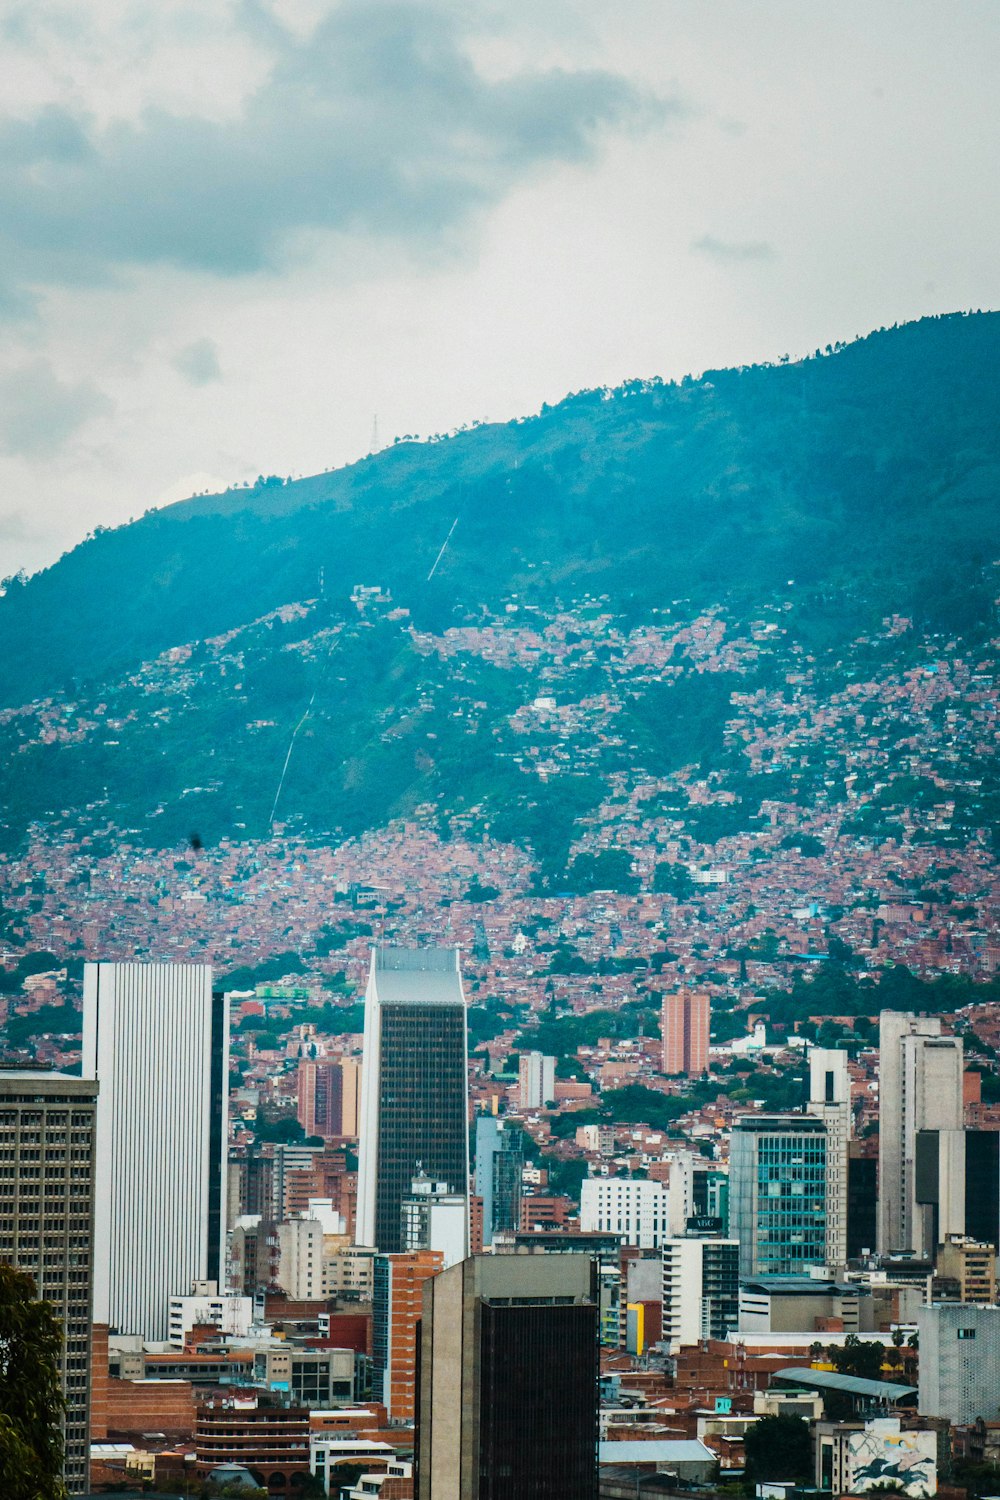 Una vista di una città con una montagna sullo sfondo